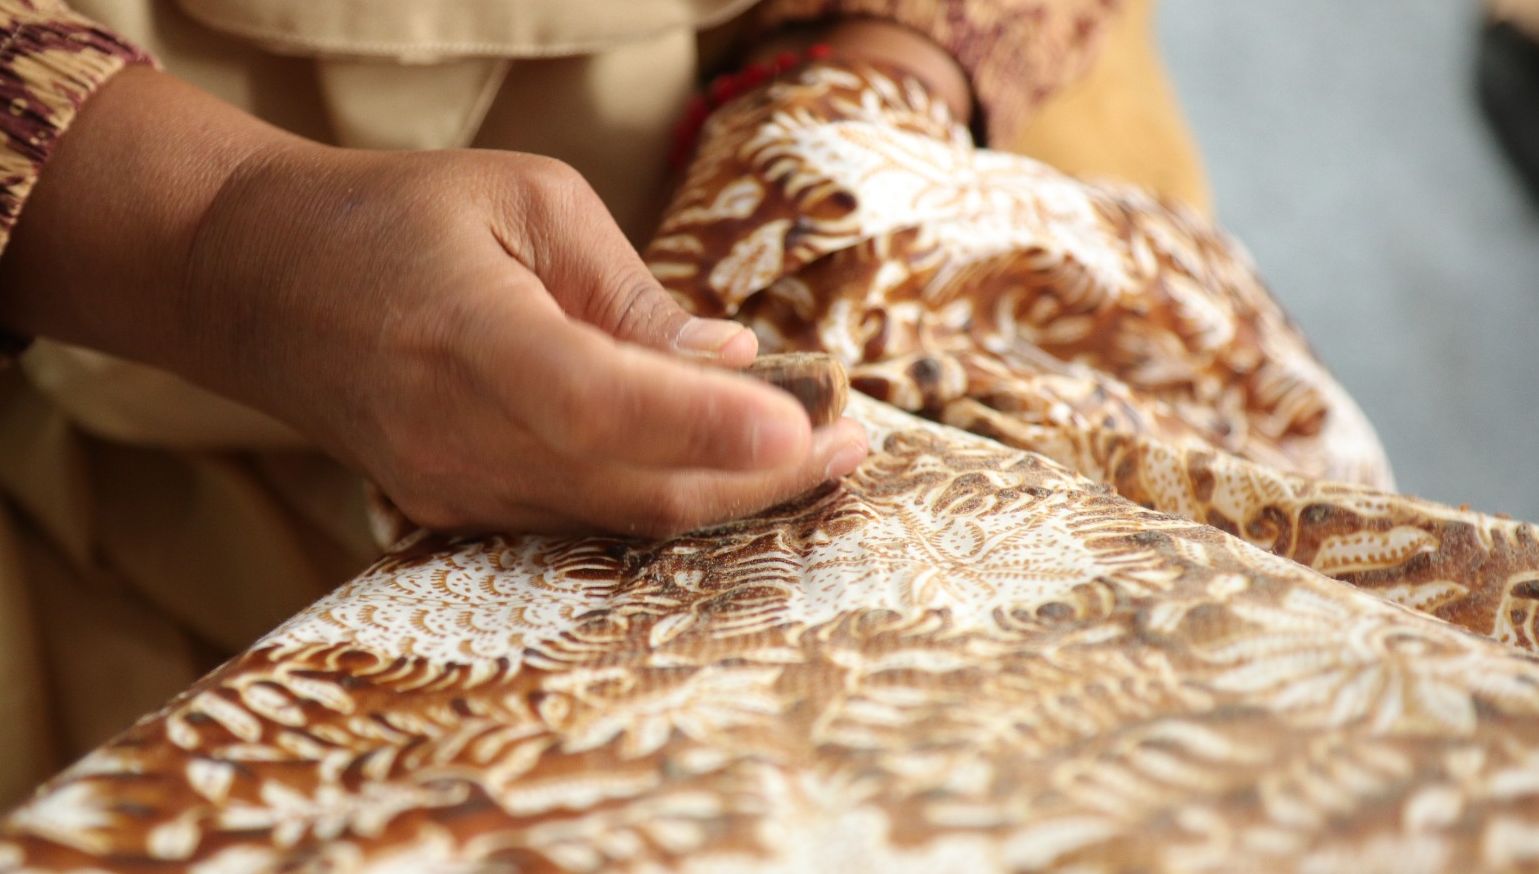 Motif batik complangan menggunakan teknik melubangi kain dengan jarum khusus/